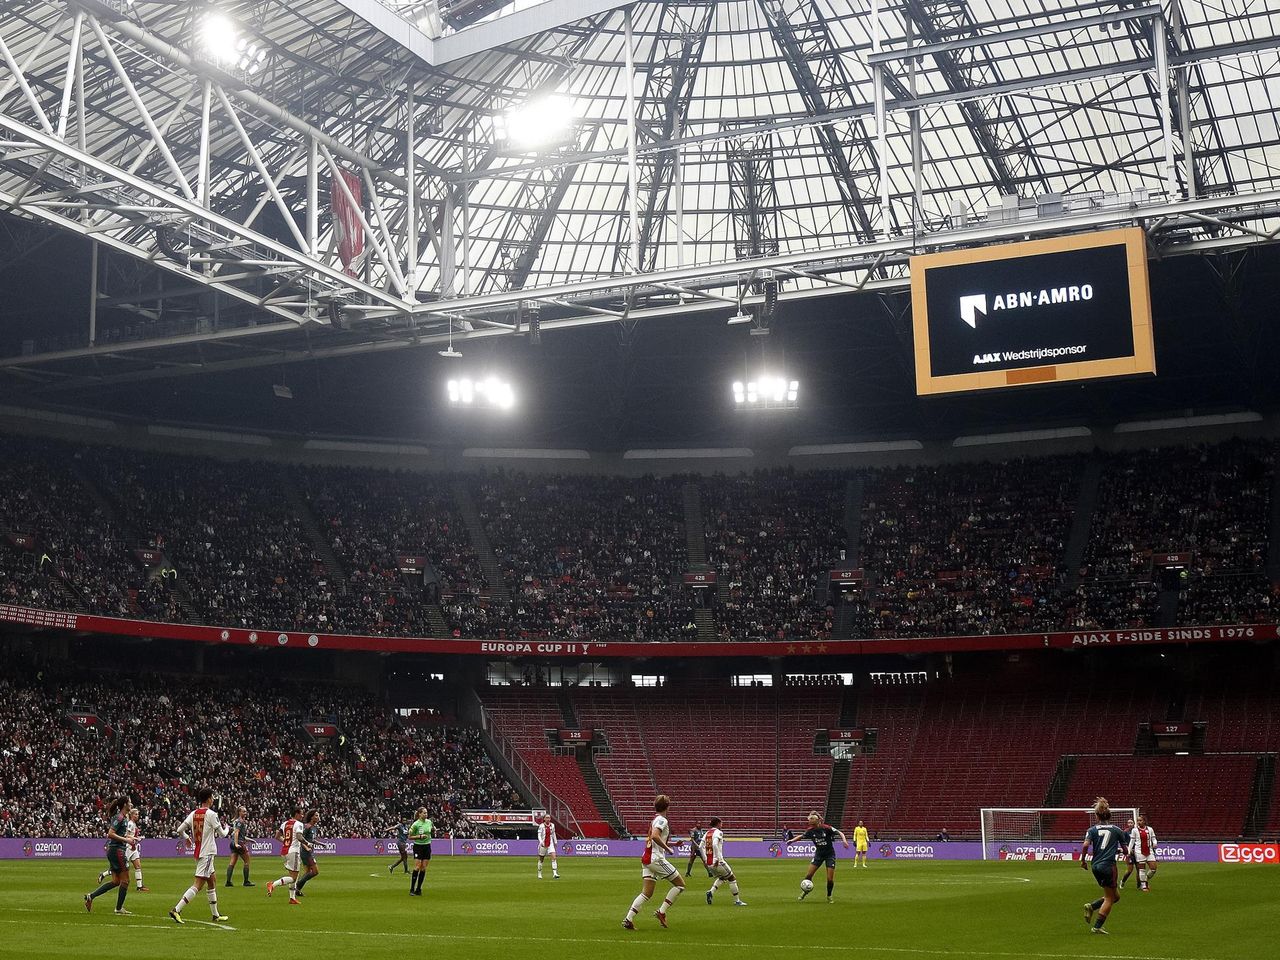 Eredivisie | Recordaantal Fans Bij Eerste Klassieker Vrouwen In Jc Arena -  Ajax En Feyenoord Spelen Gelijk - Eurosport